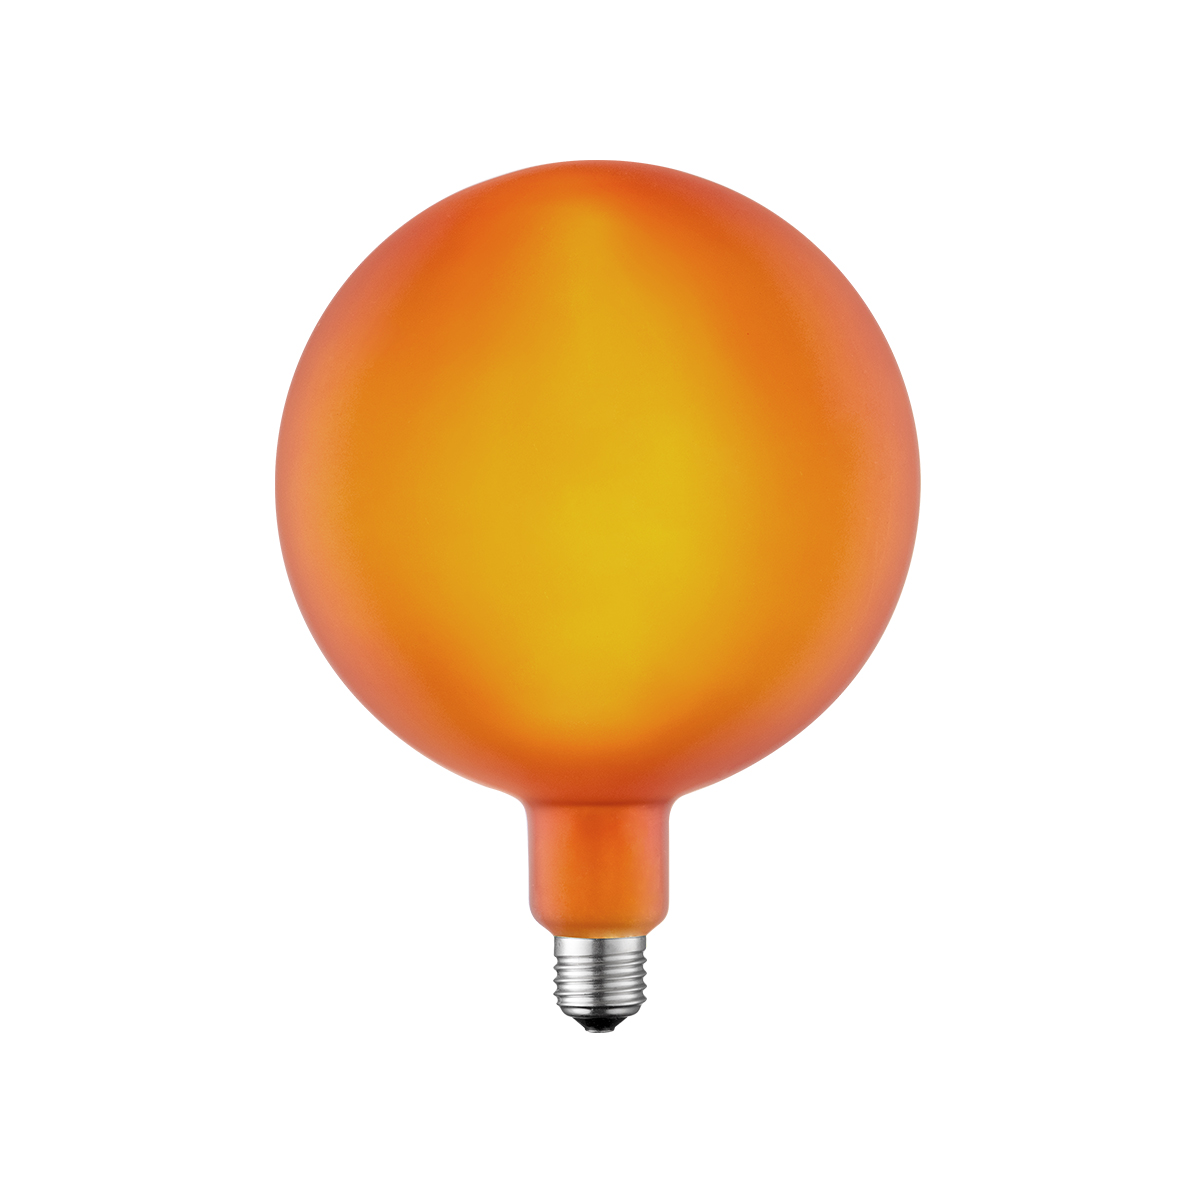 Tangla lighting - TLB-9006-04OG - LED Light Bulb Single Spiral filament - G180 4W orange opal - non dimmable - E27